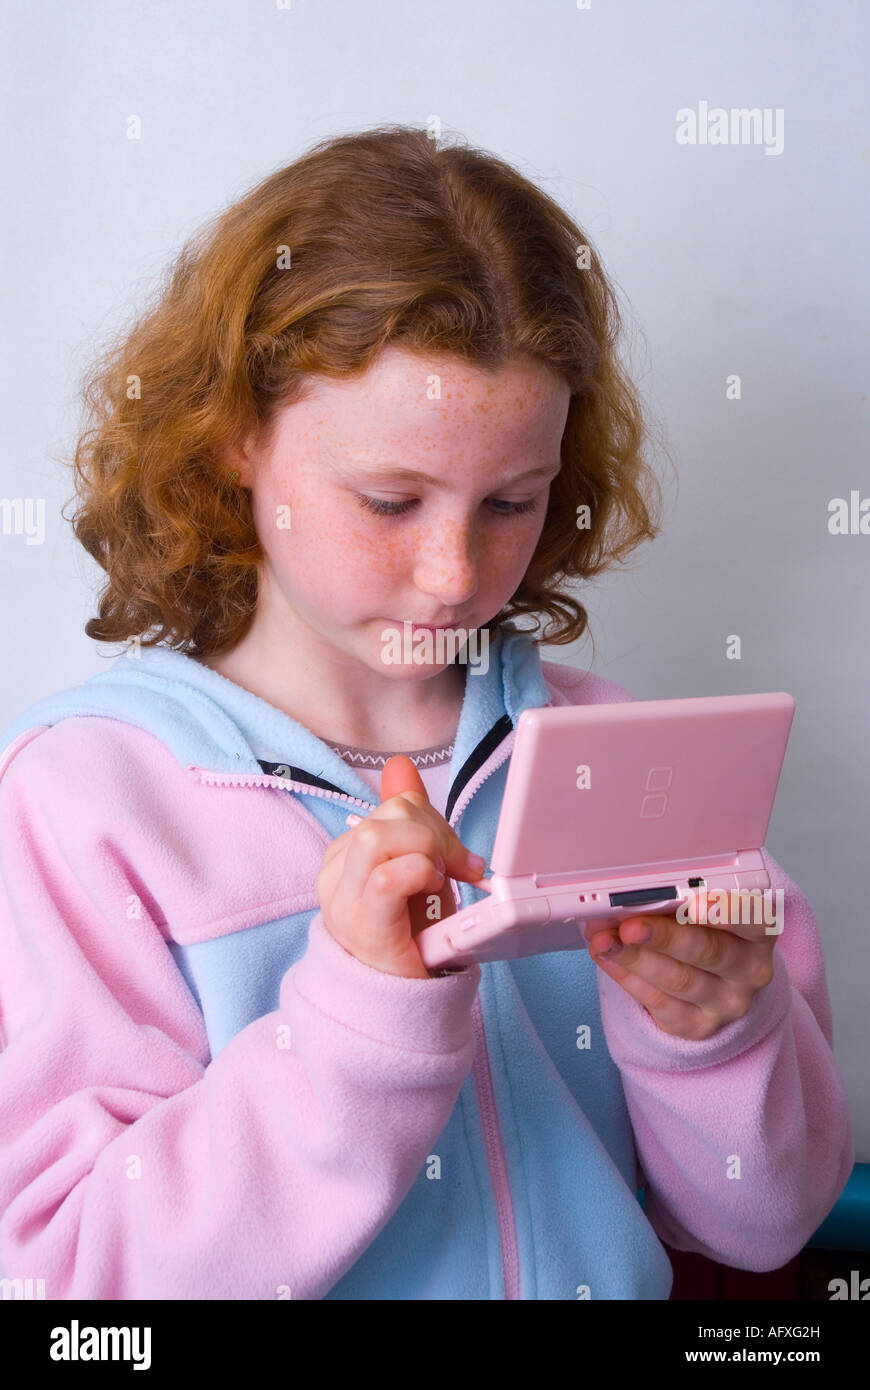 Ein 11 Jahre altes Mädchen spielen auf einem Nintendo DS Lite Spiel-Maschine  mit einem Stift Stockfotografie - Alamy